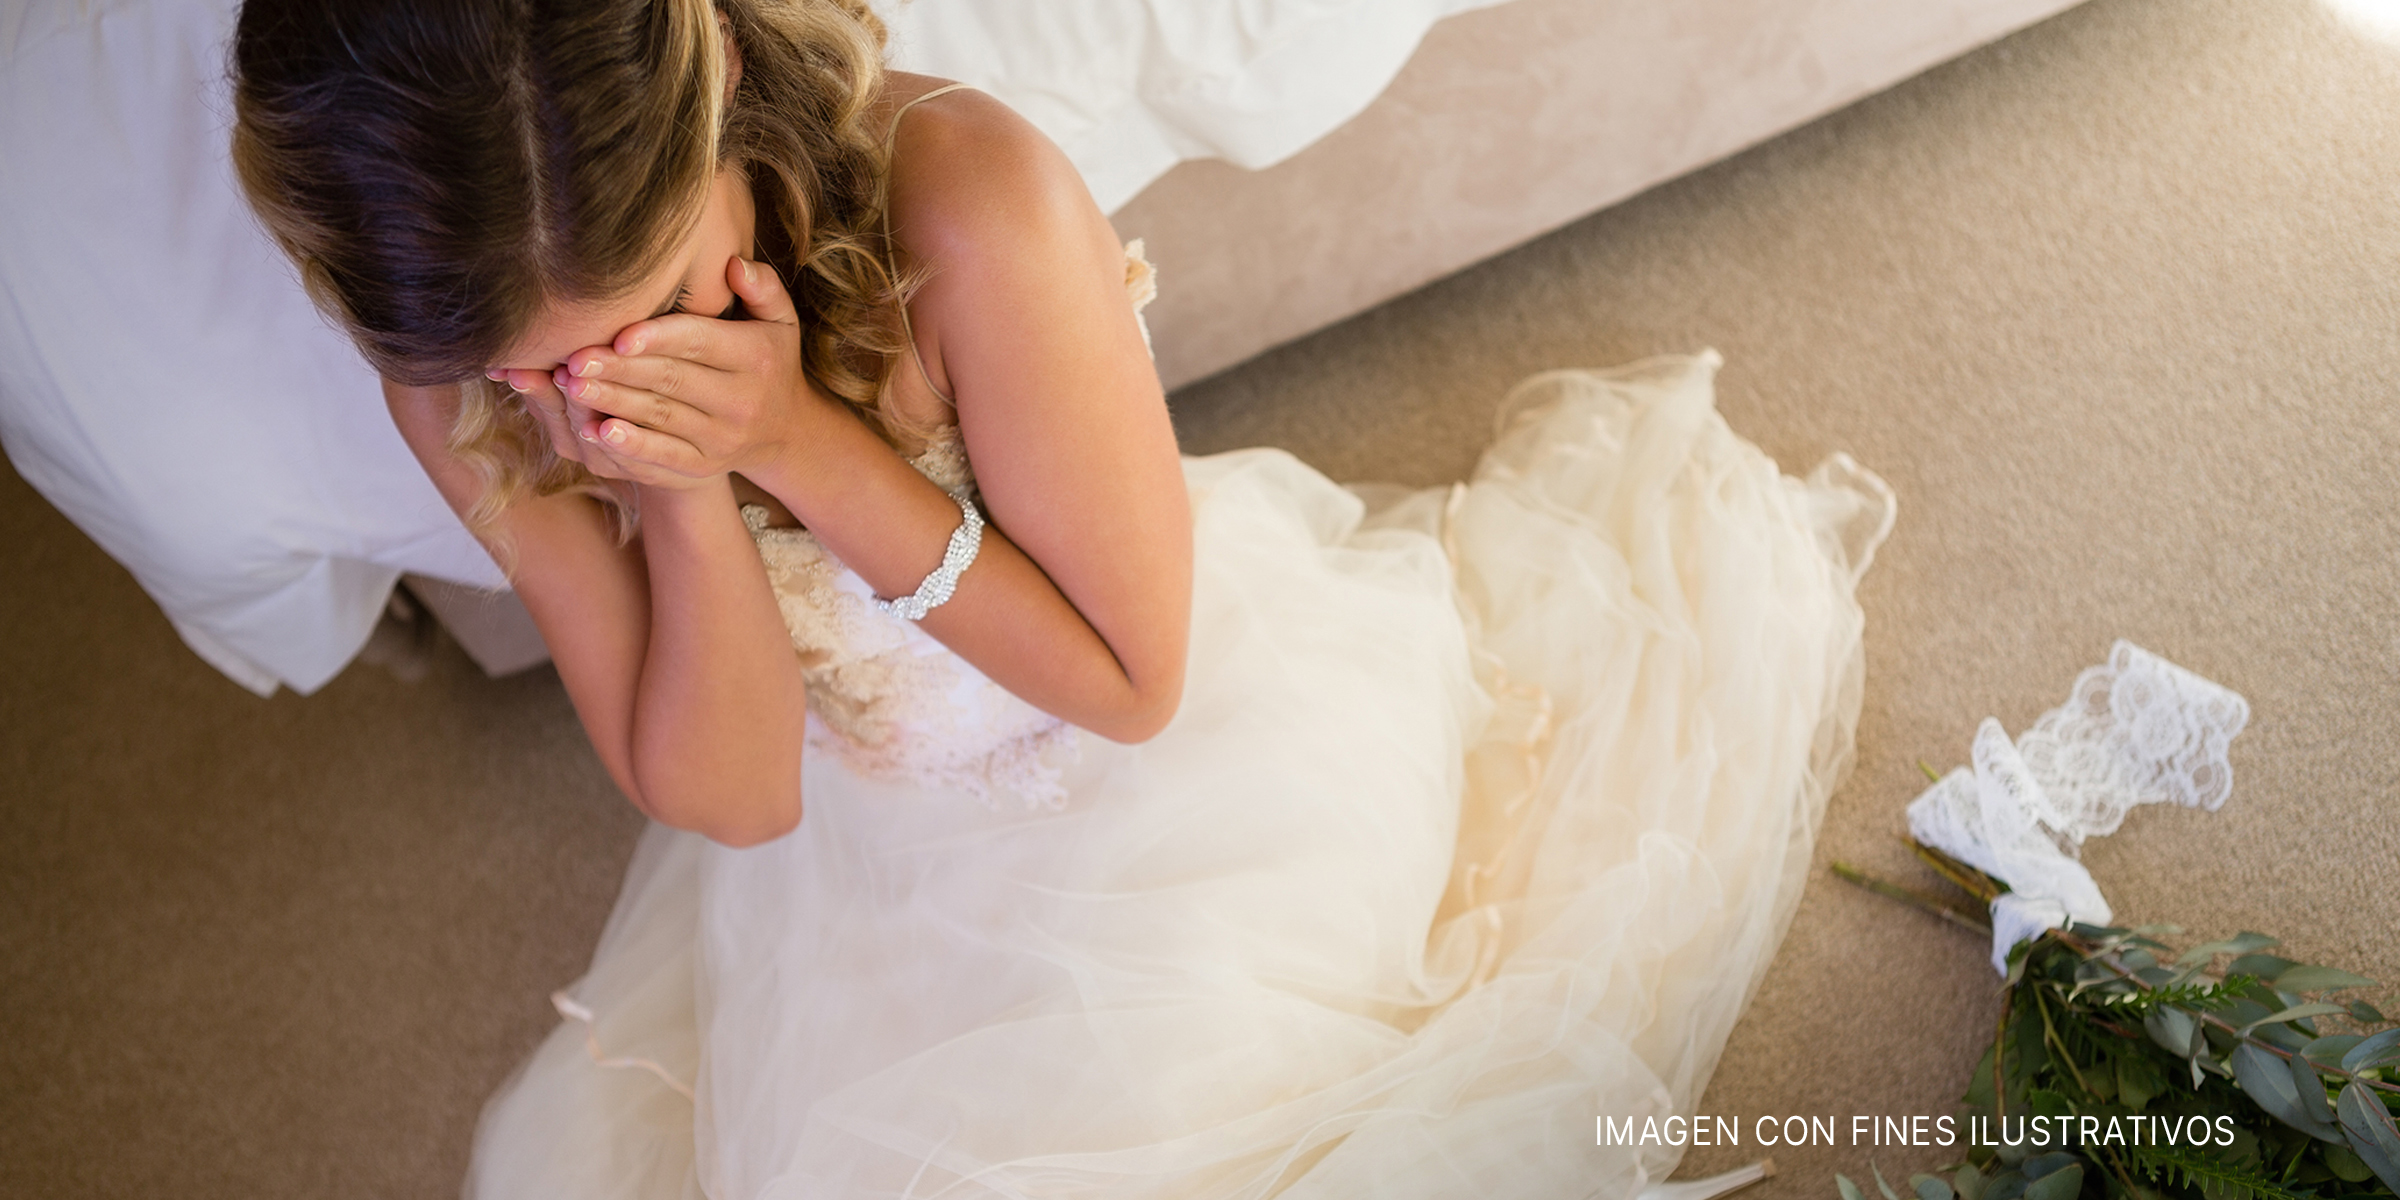 Una novia llorando. | Foto: Shutterstock